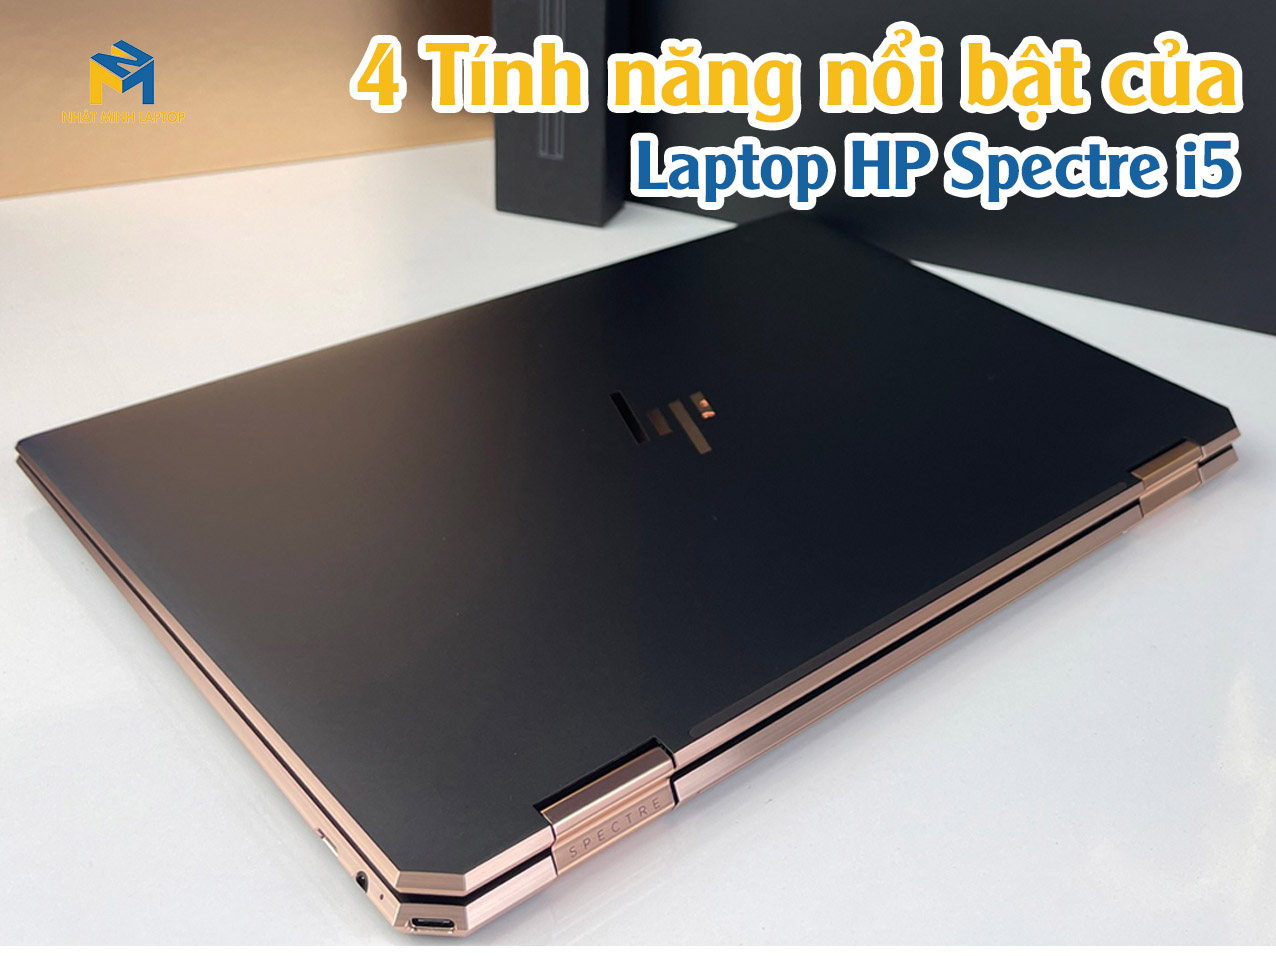  Laptop HP Spectre i5 Sở hữu 4 tính năng nổi bật nào?